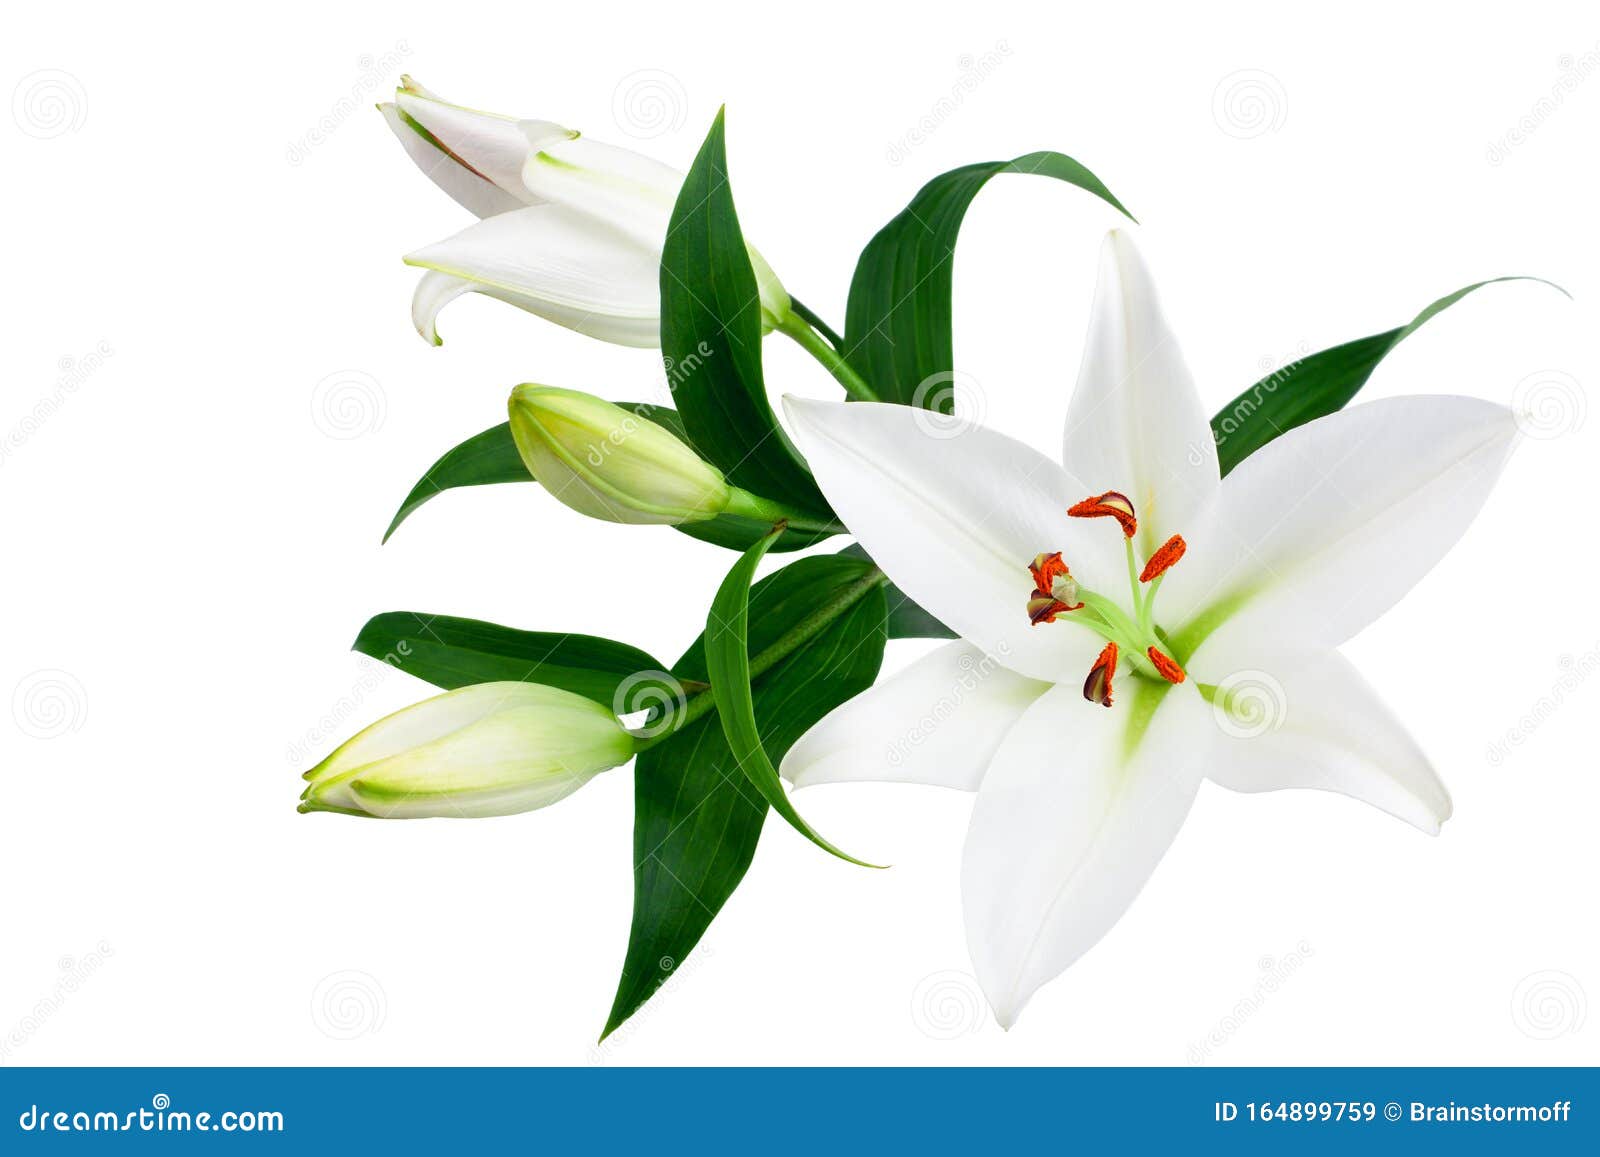 白色百合花和白色背景绿叶的花蕾 特写 百合花束 紫丁香花束 花图案库存图片 图片包括有特写镜头 设计